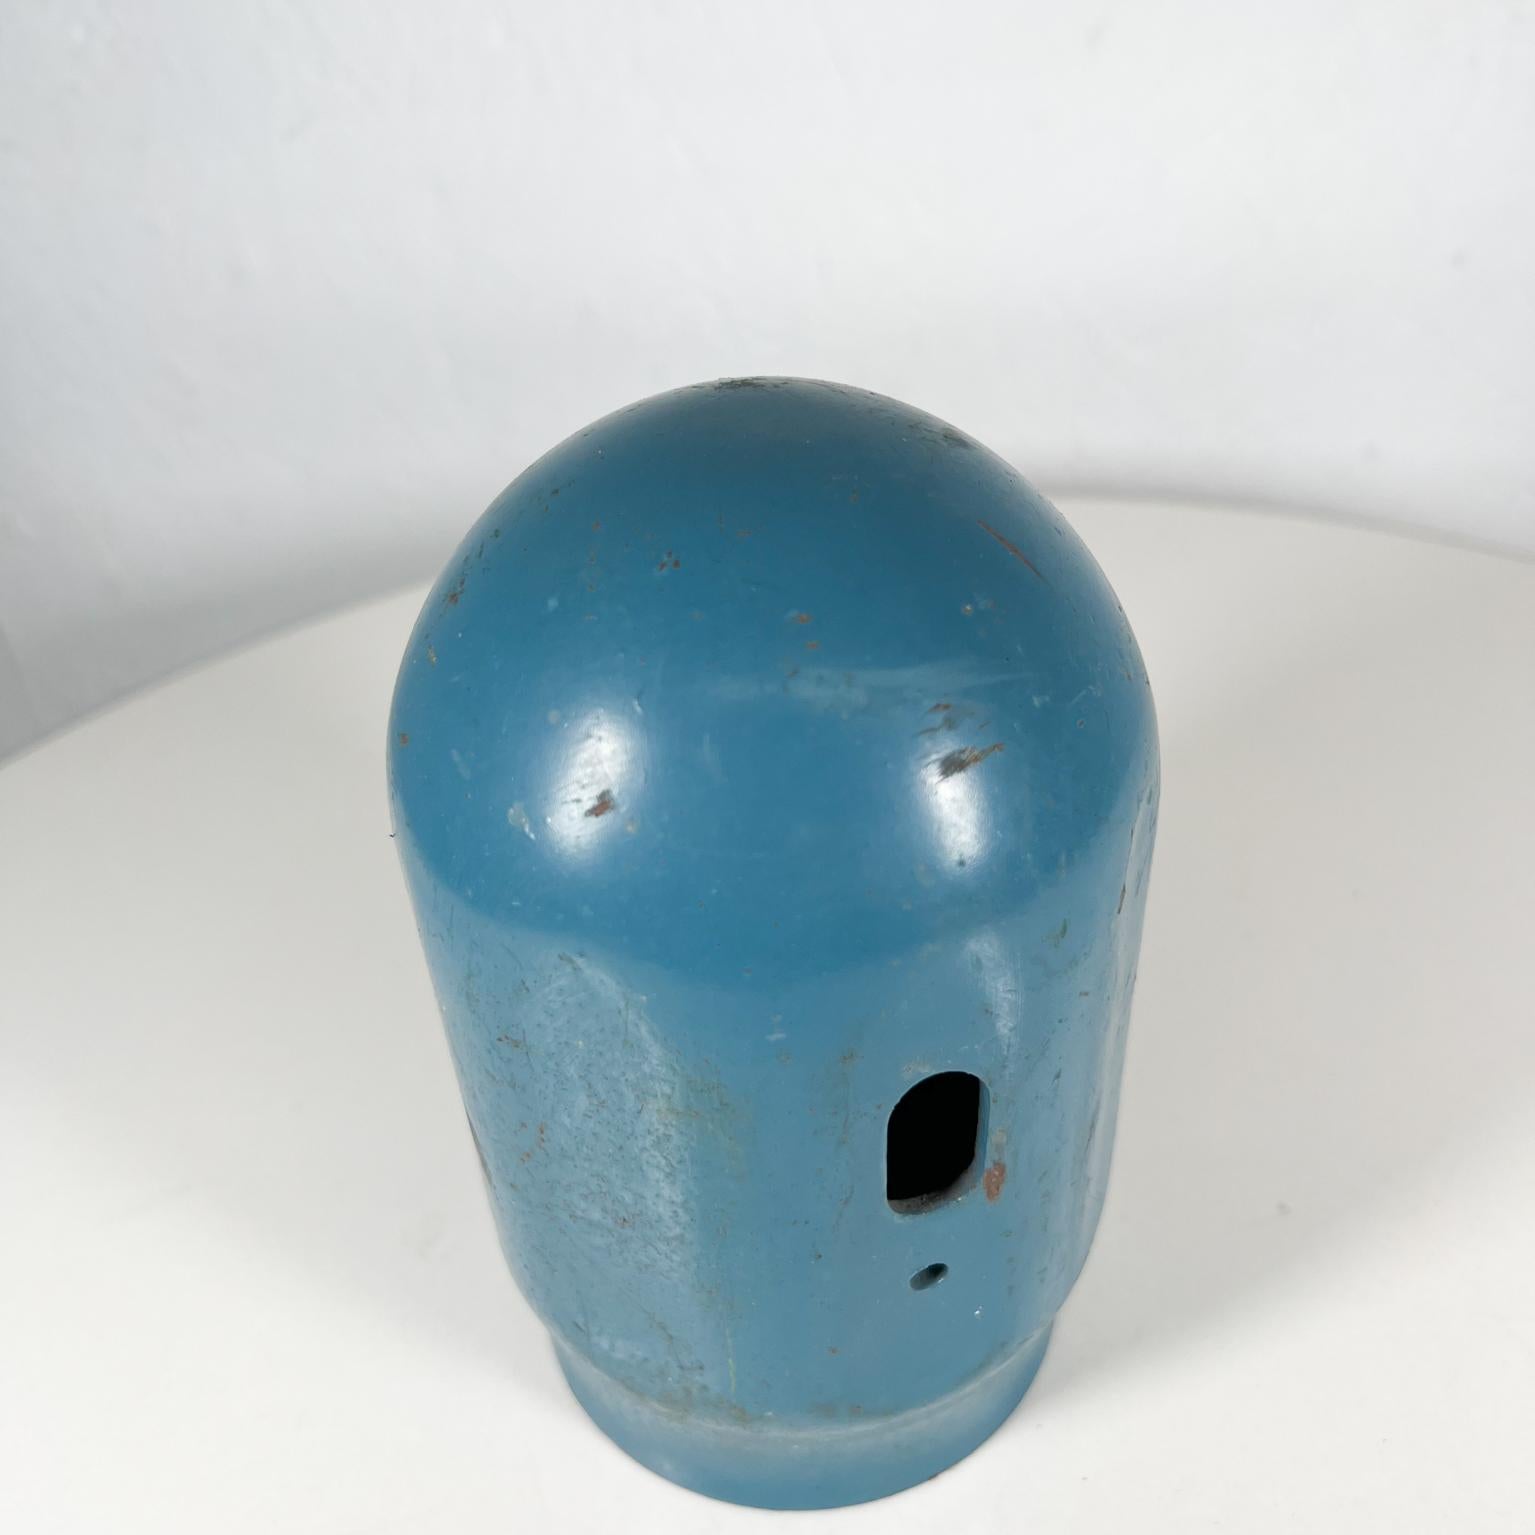 Old Vintage Blau Gewinde Gasflasche Cap (Metall)